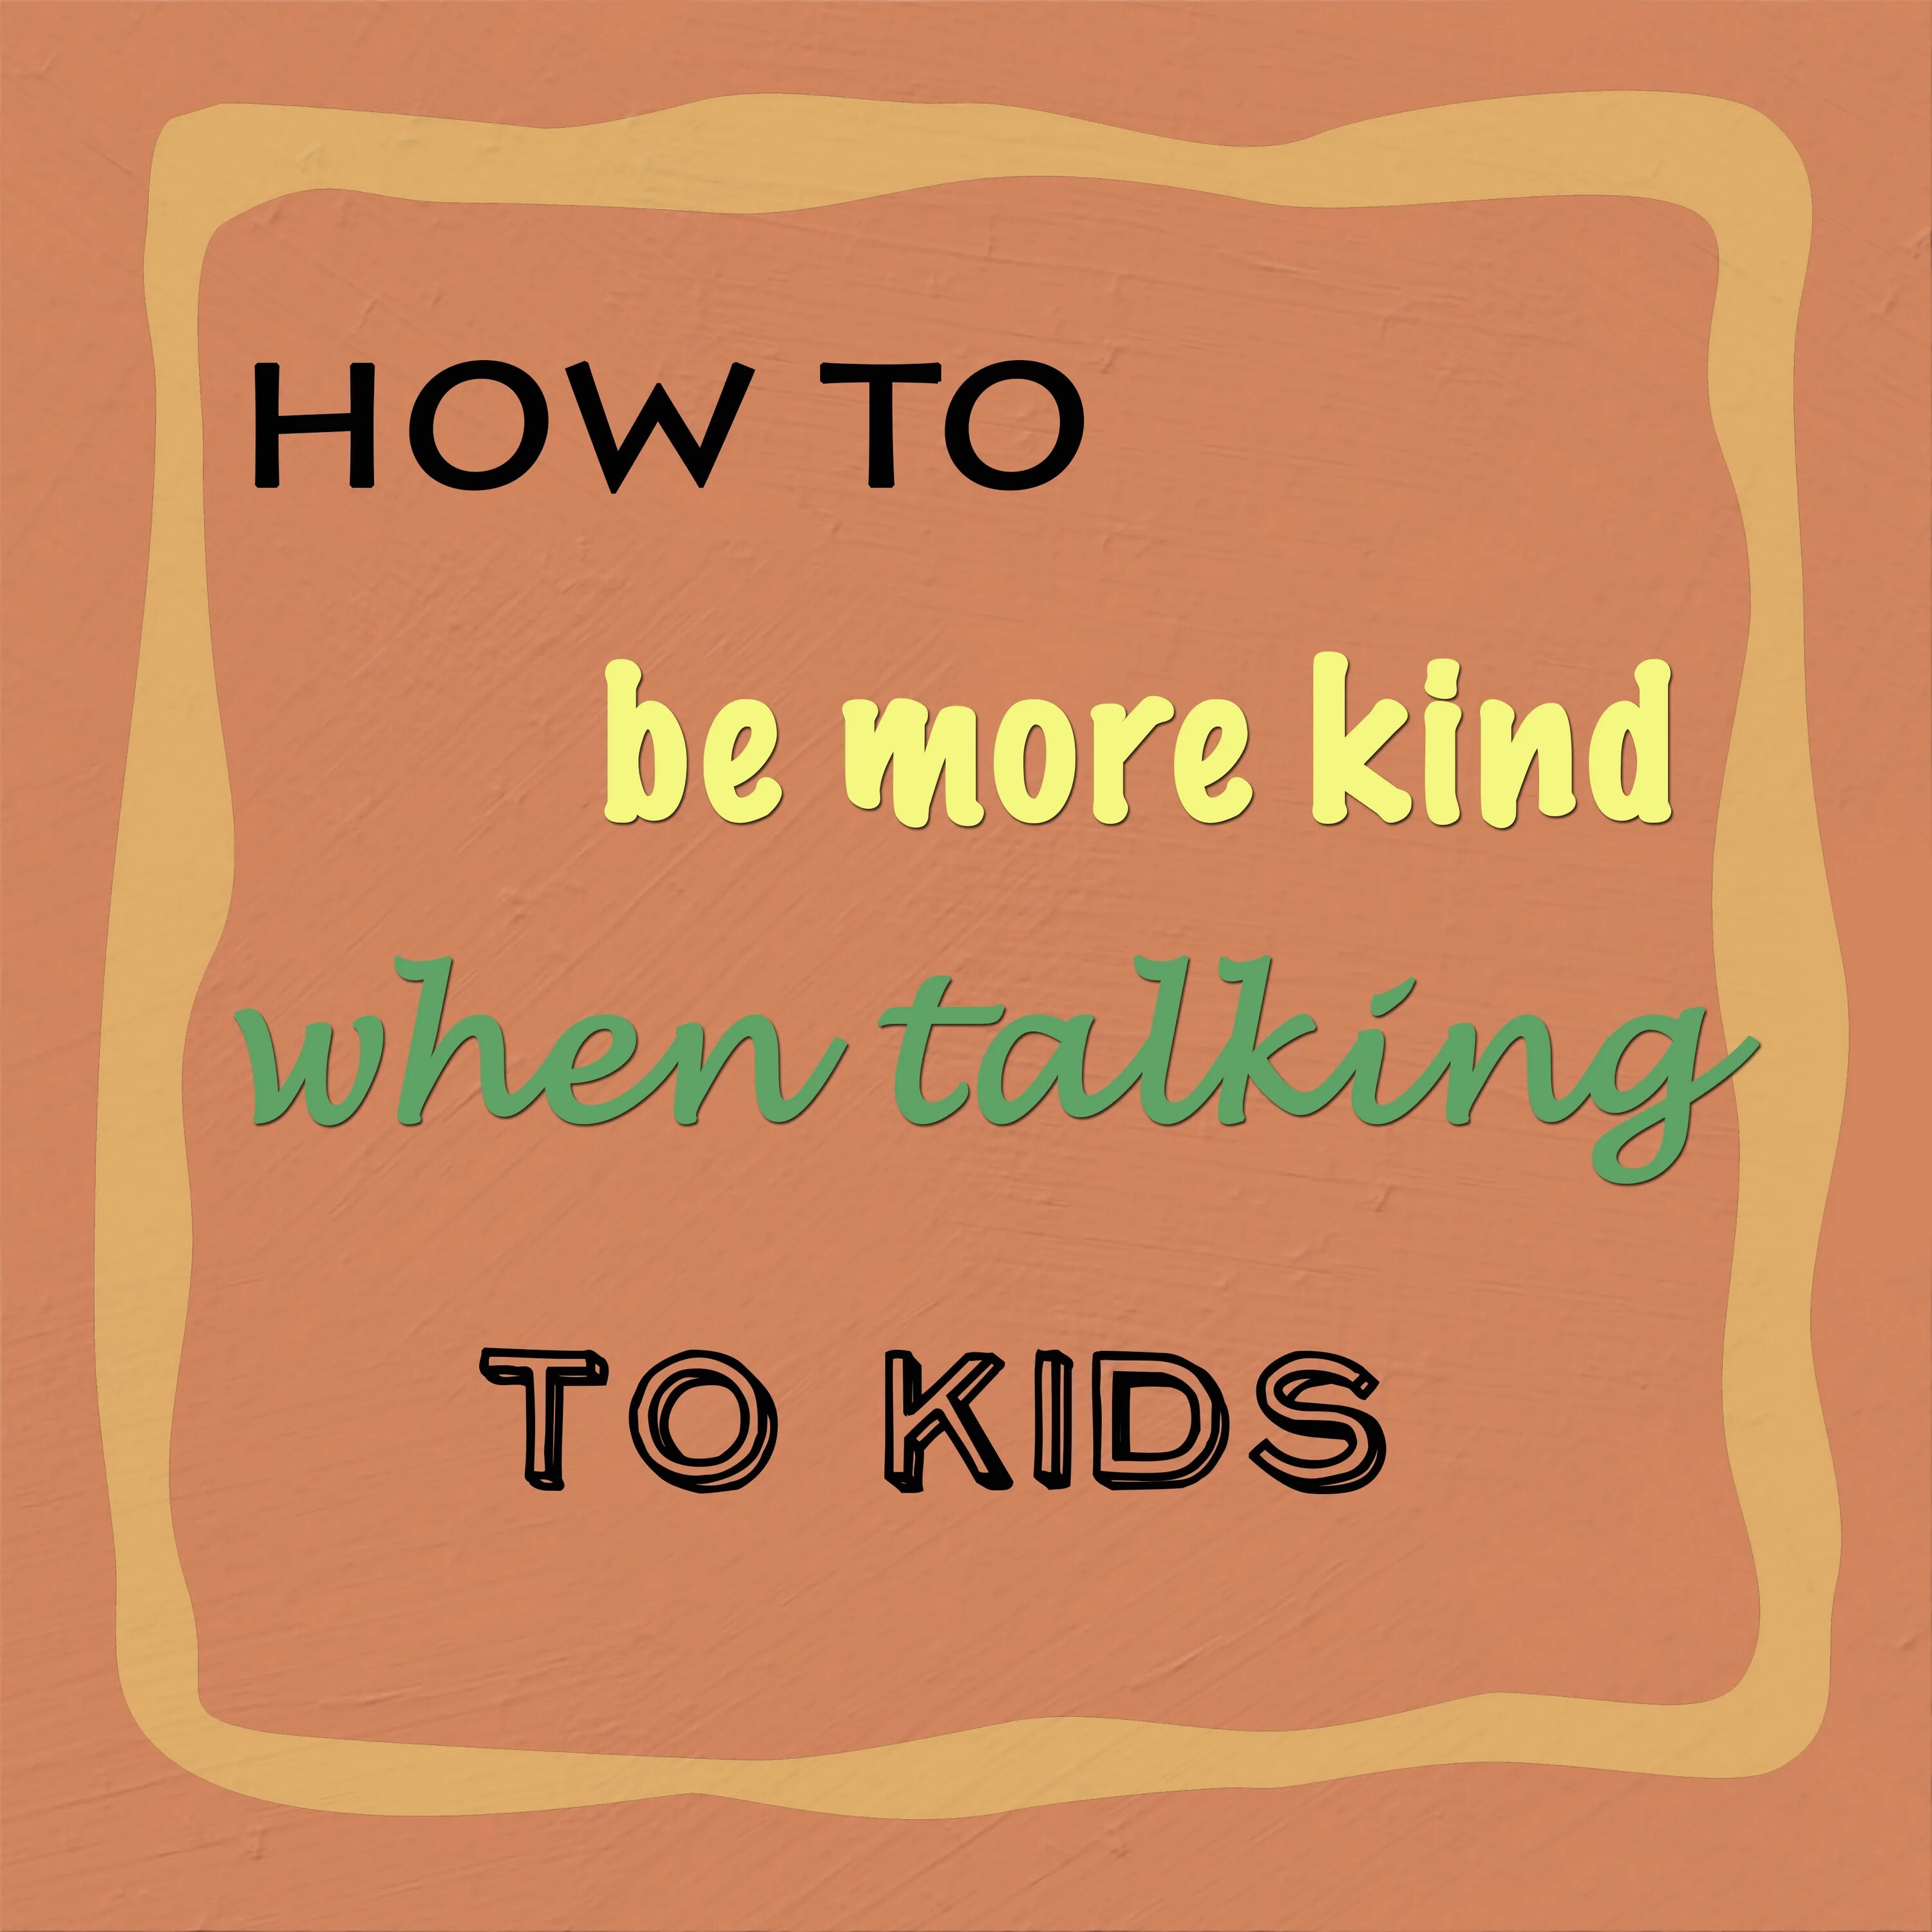 Kinder or more kind. Speak kindly. Be more kind. Speak kindly pic.